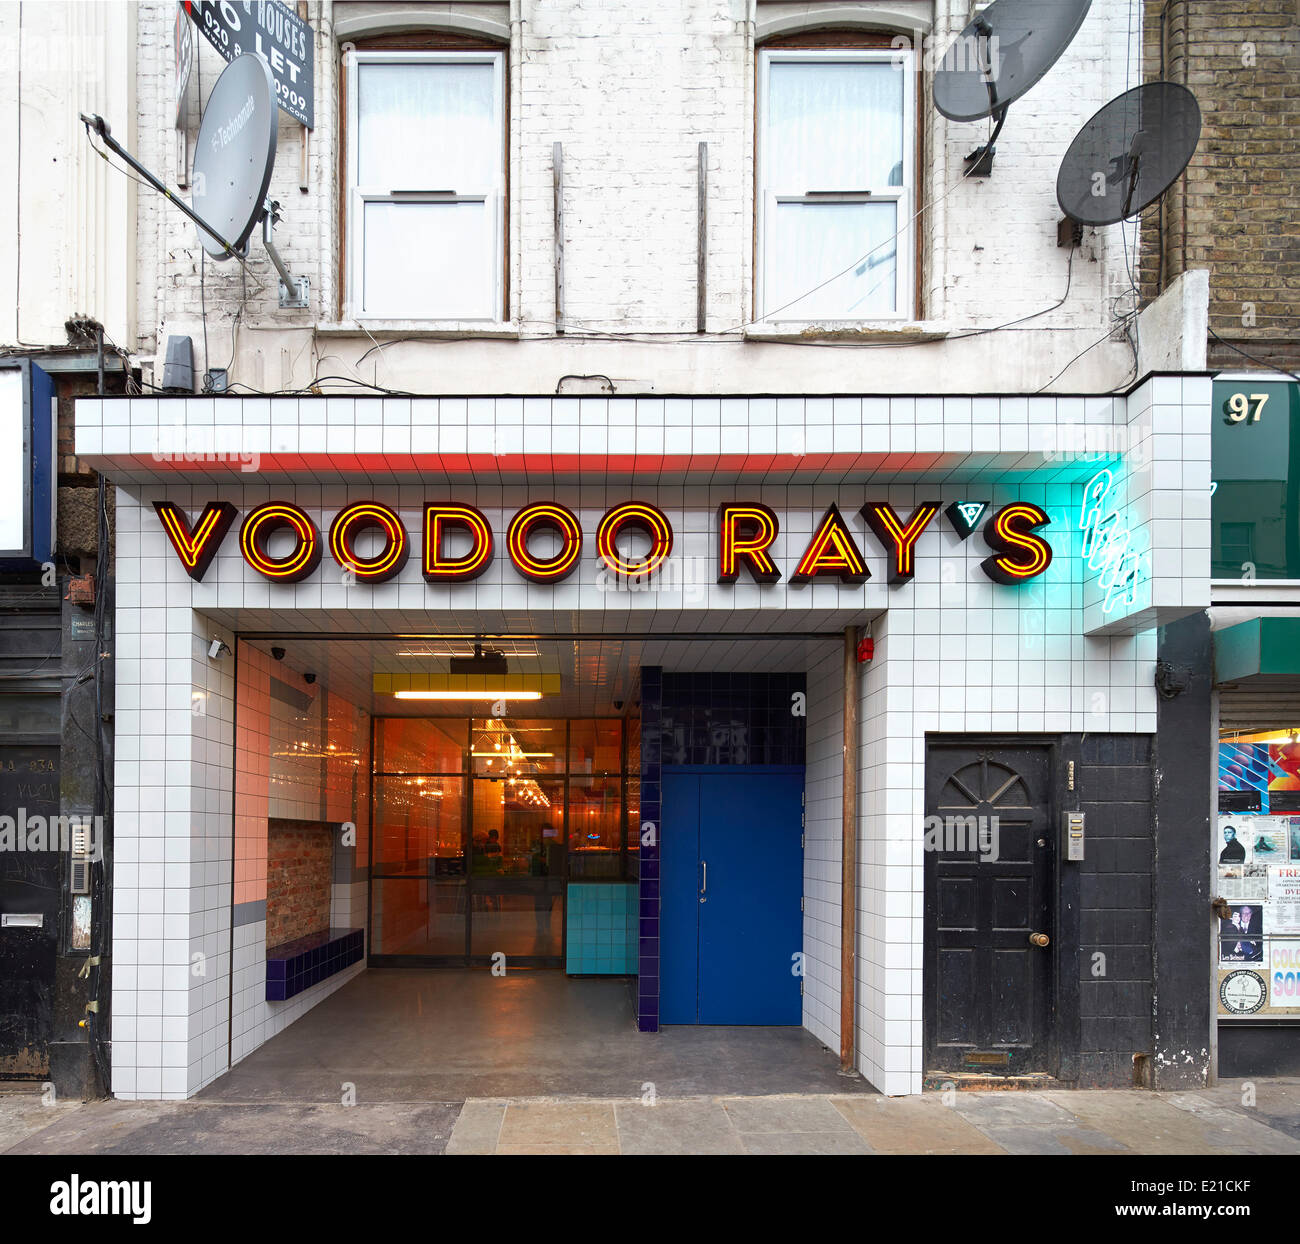 Voodoo-Strahlen, London, Vereinigtes Königreich. Architekt: Gundry & Ducker, 2013. Vorderansicht des Eingang. Stockfoto